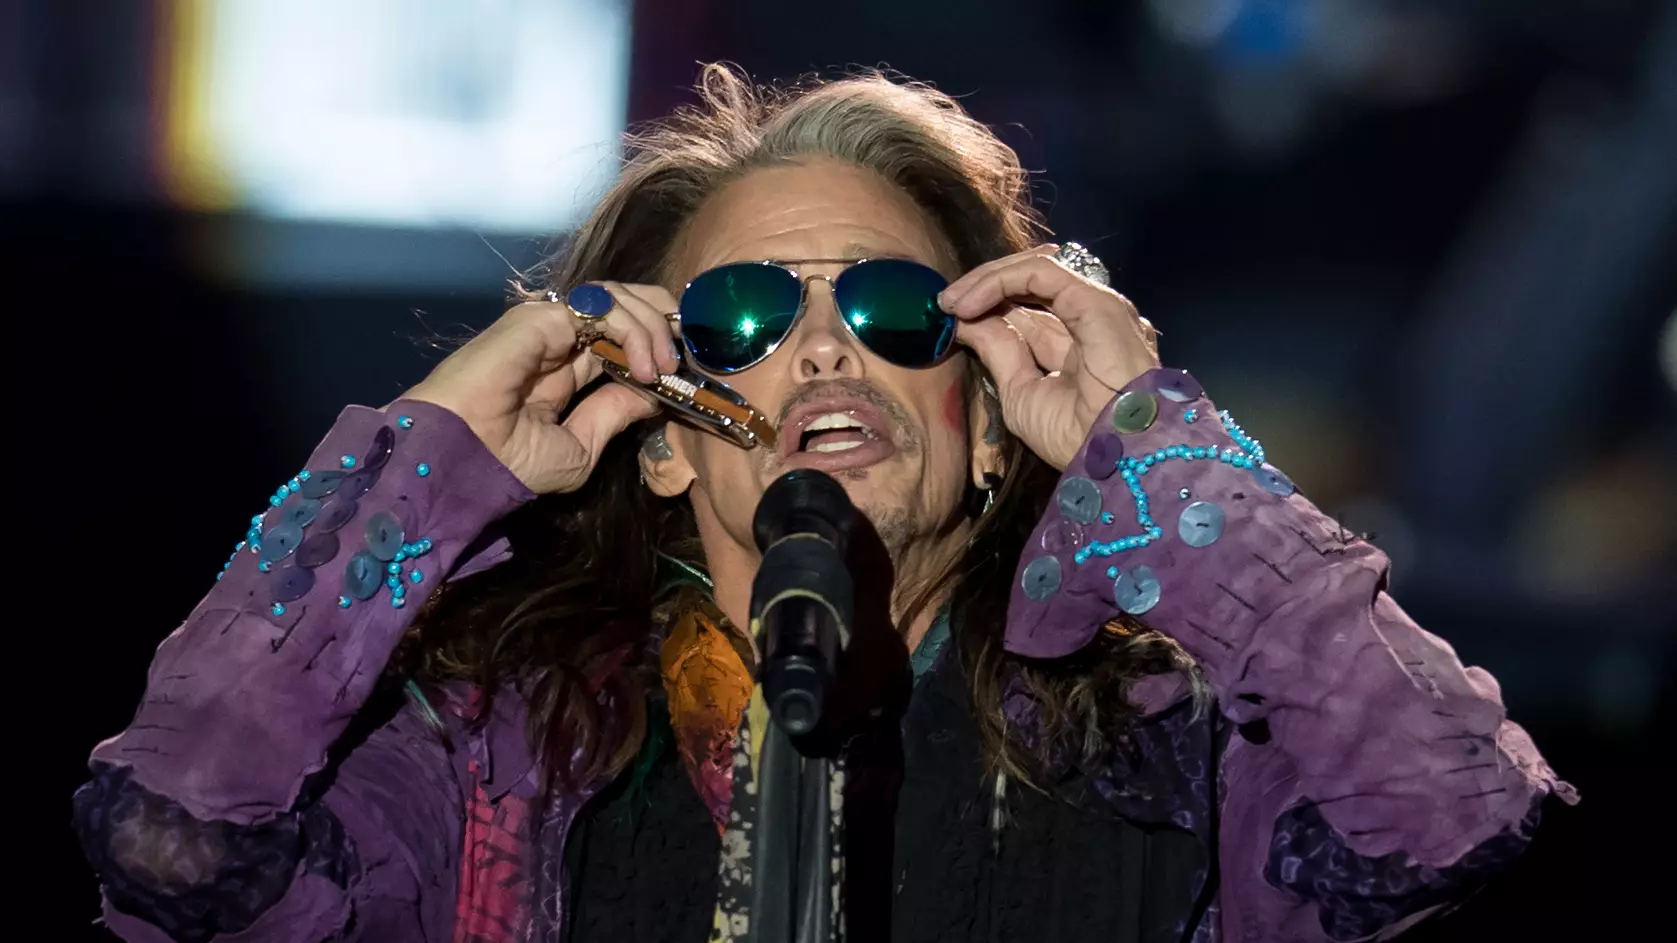 Aerosmith's Steven Tyler Opens A Women's Shelter For Abused Girls